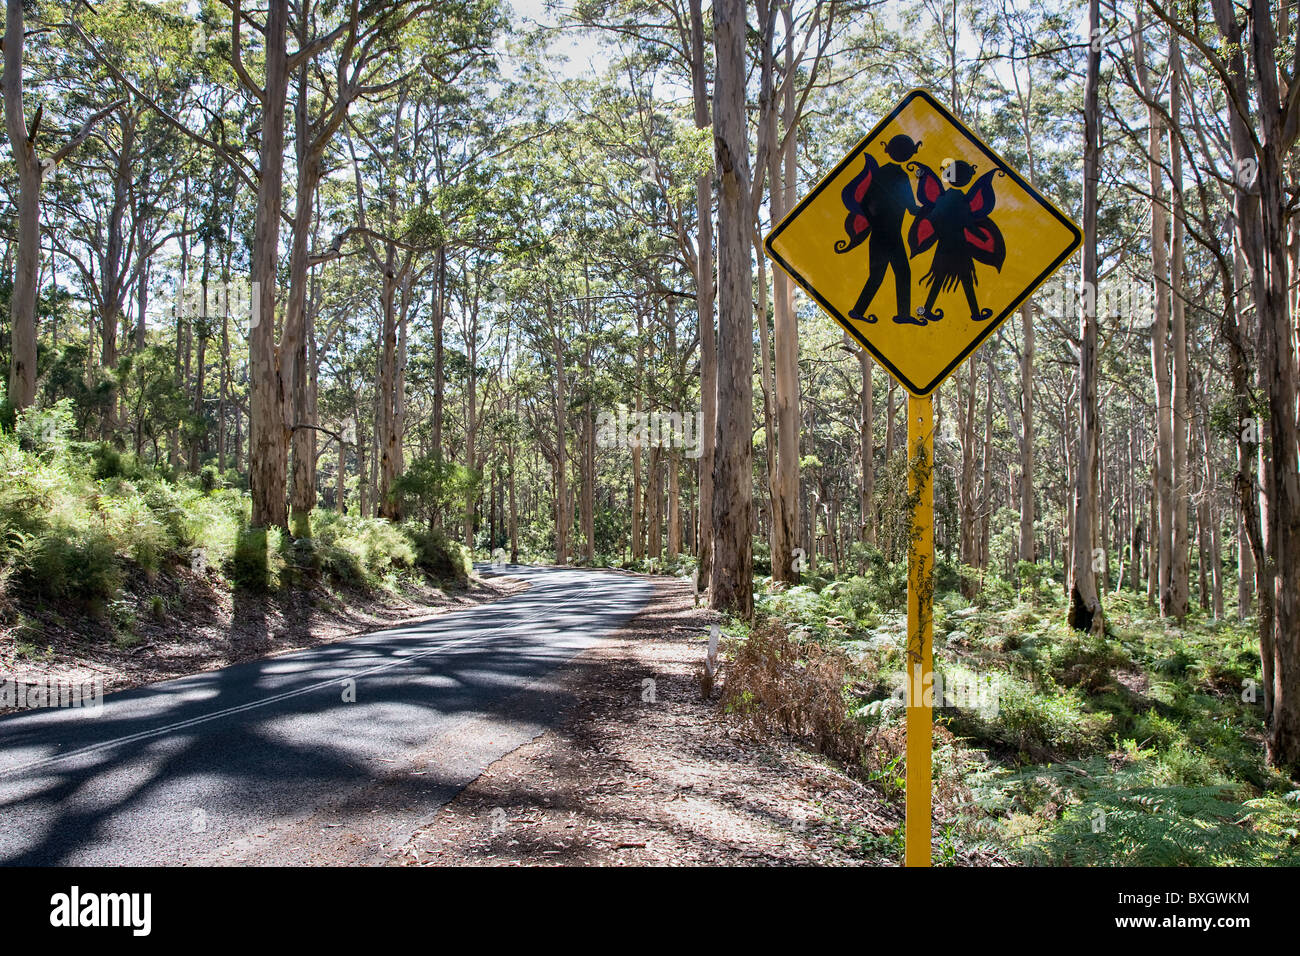 Elfen, die Straße überqueren zu unterzeichnen, durch den Karri-Wald des Leeuwin Naturaliste Nationalparks in Western Australia Stockfoto